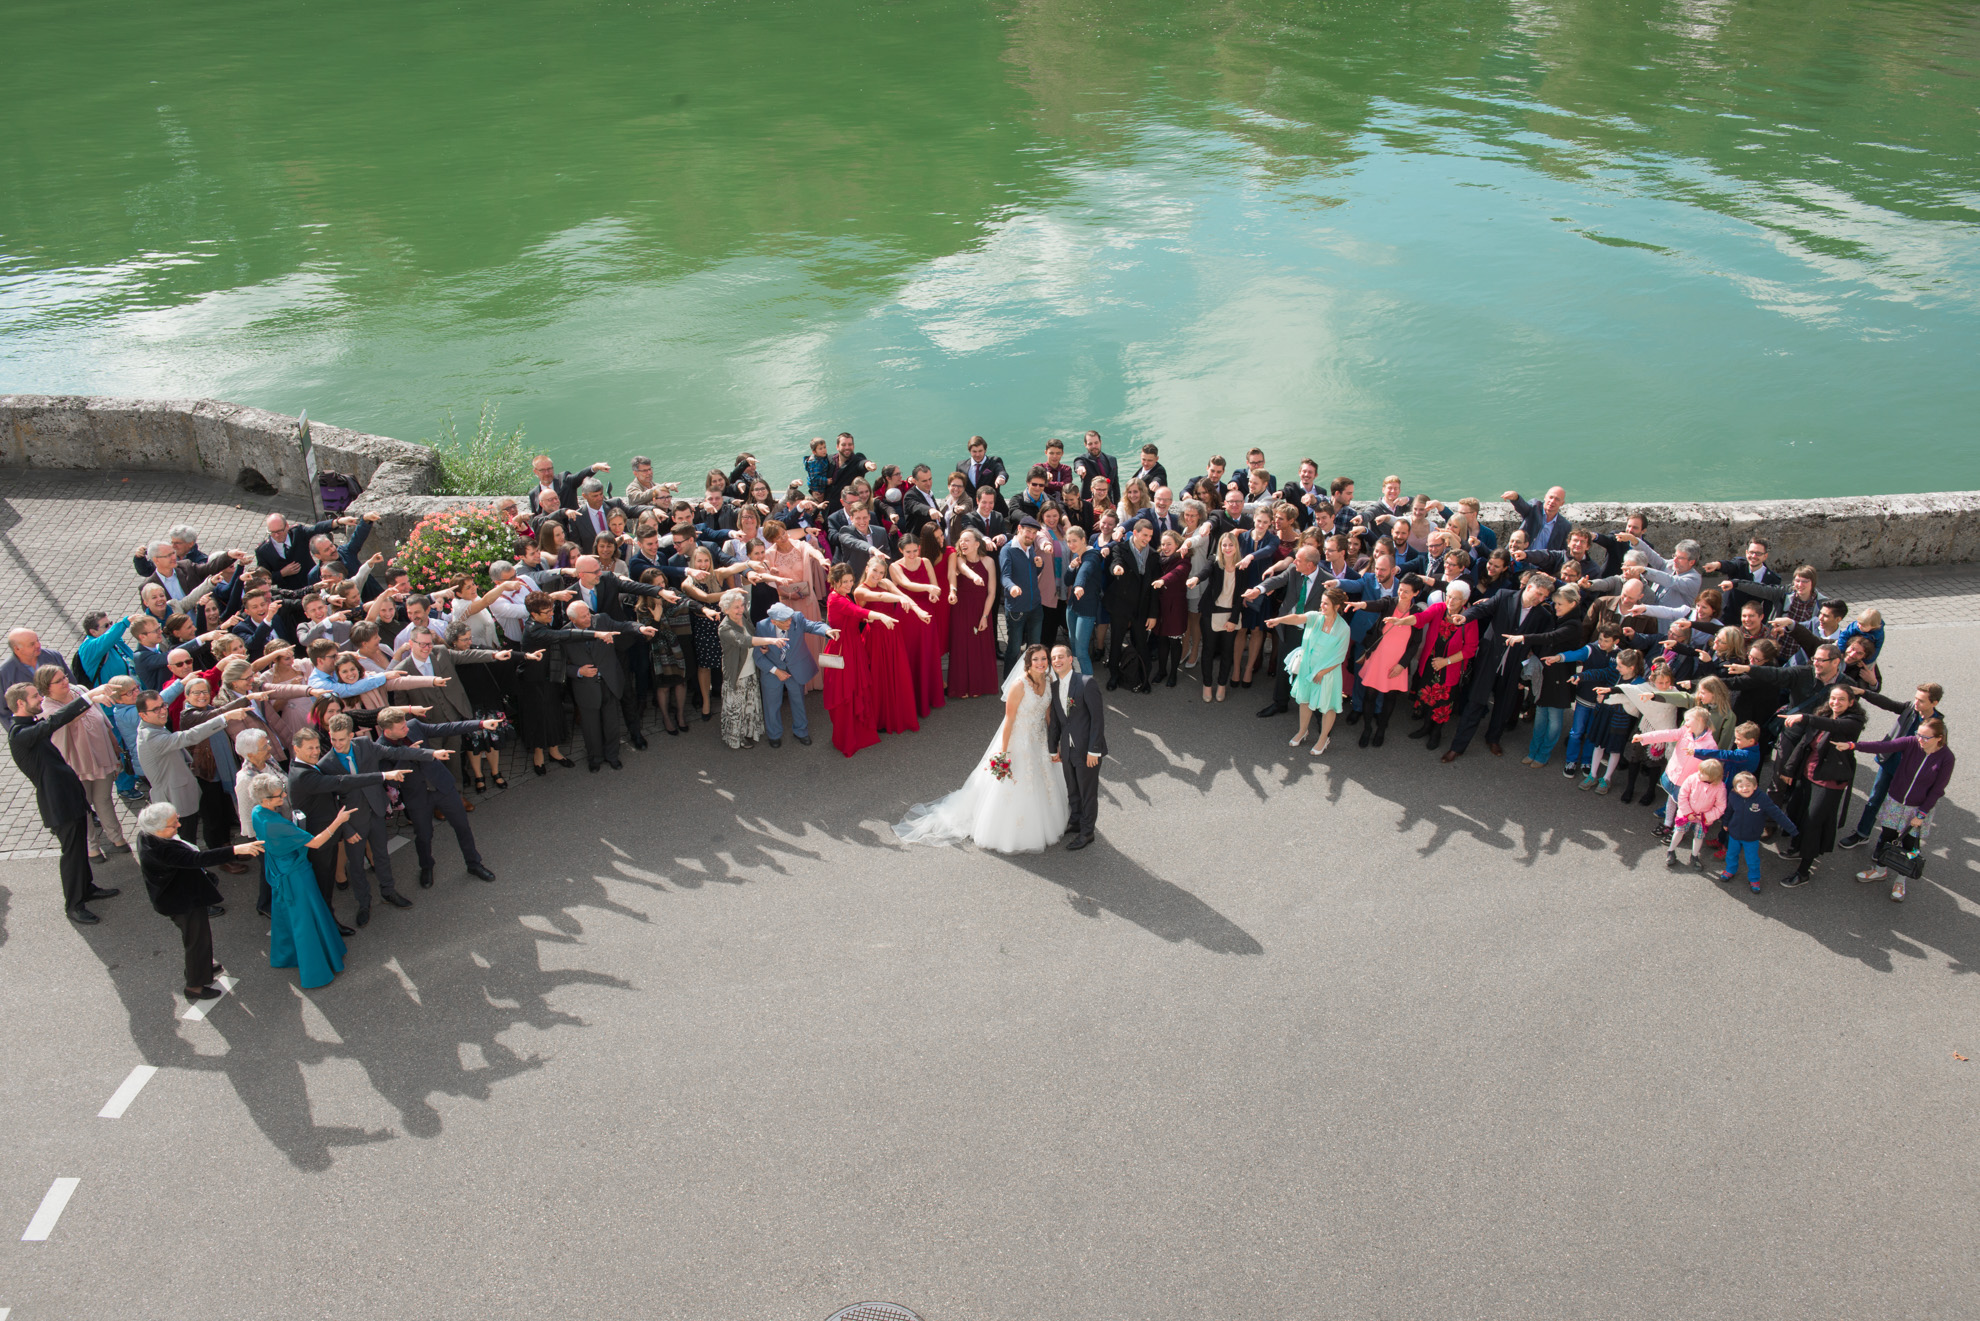 Hochzeitsfotograf Winterthur Schweiz